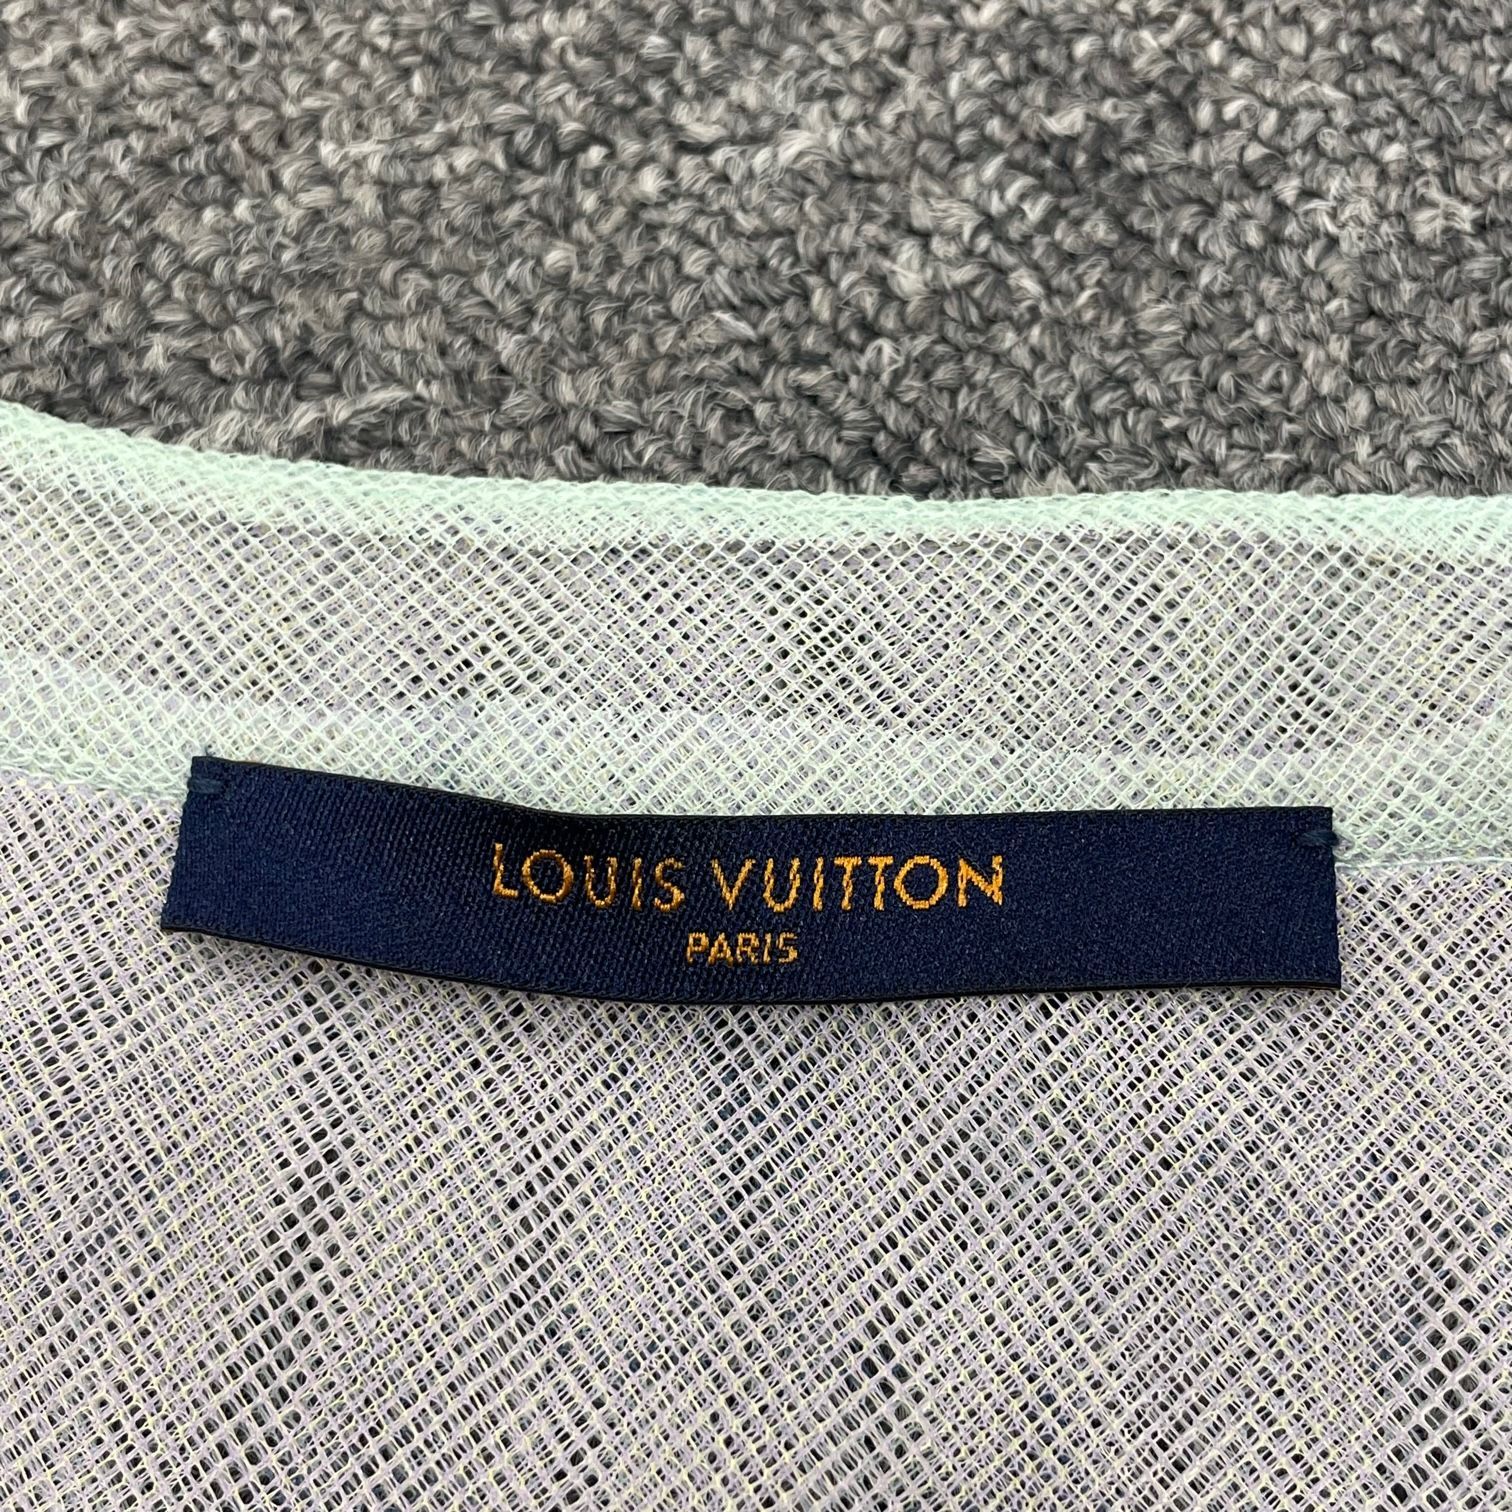 国内正規 未使用品 LOUIS VUITTON モノグラム チュール レイヤード Tシャツ ルイヴィトン RM201 TED HIS77W M